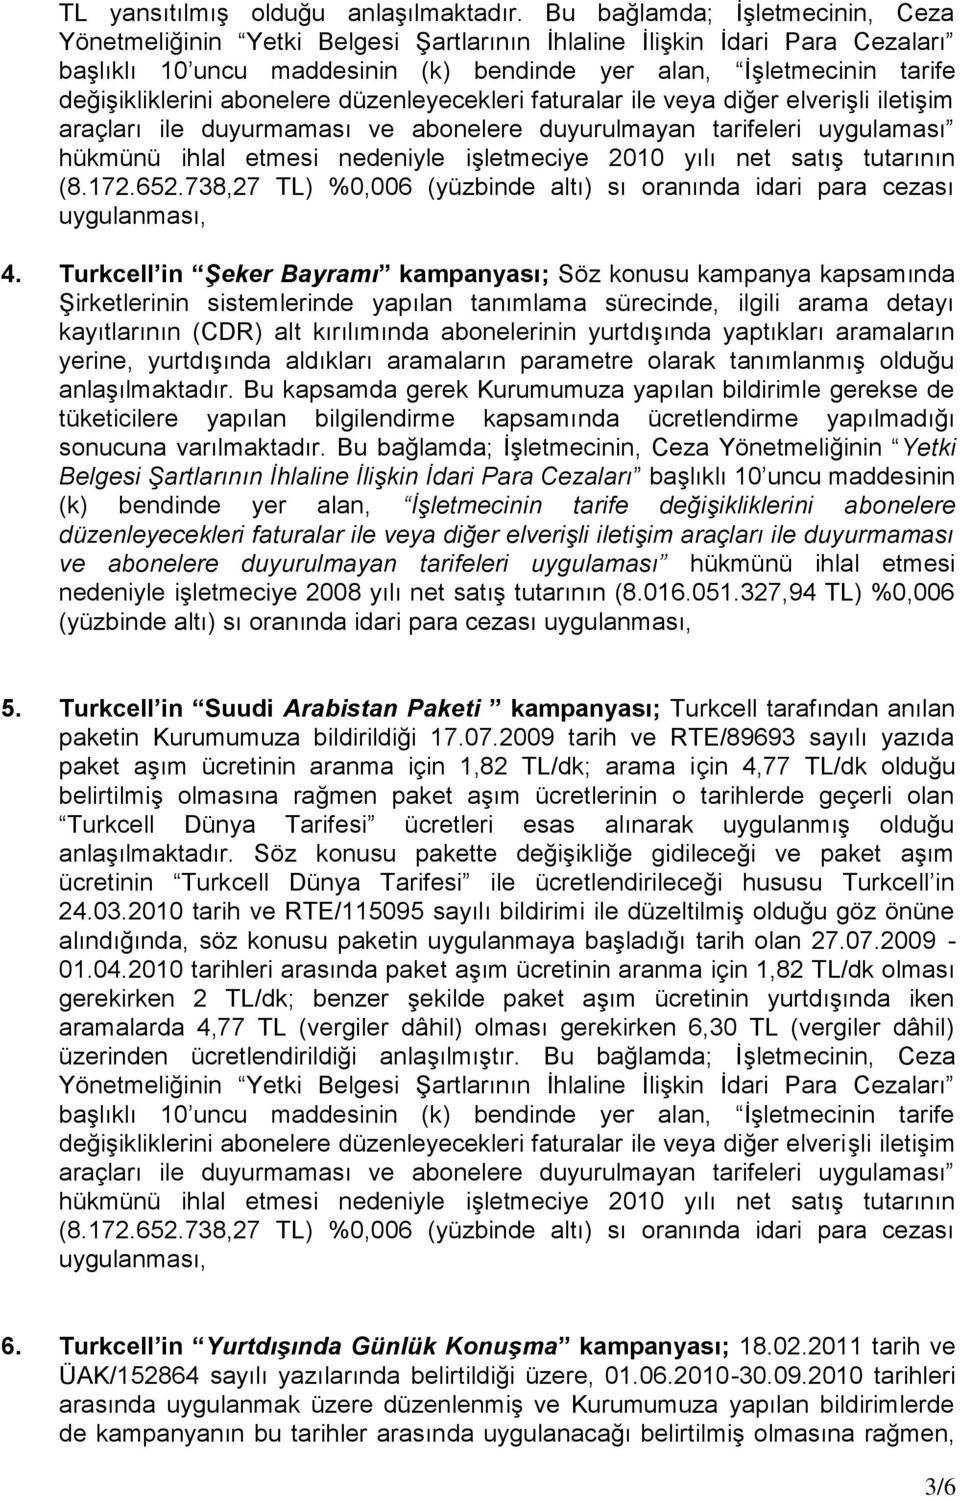 Turkcell in Şeker Bayramı kampanyası; Söz konusu kampanya kapsamında Şirketlerinin sistemlerinde yapılan tanımlama sürecinde, ilgili arama detayı kayıtlarının (CDR) alt kırılımında abonelerinin